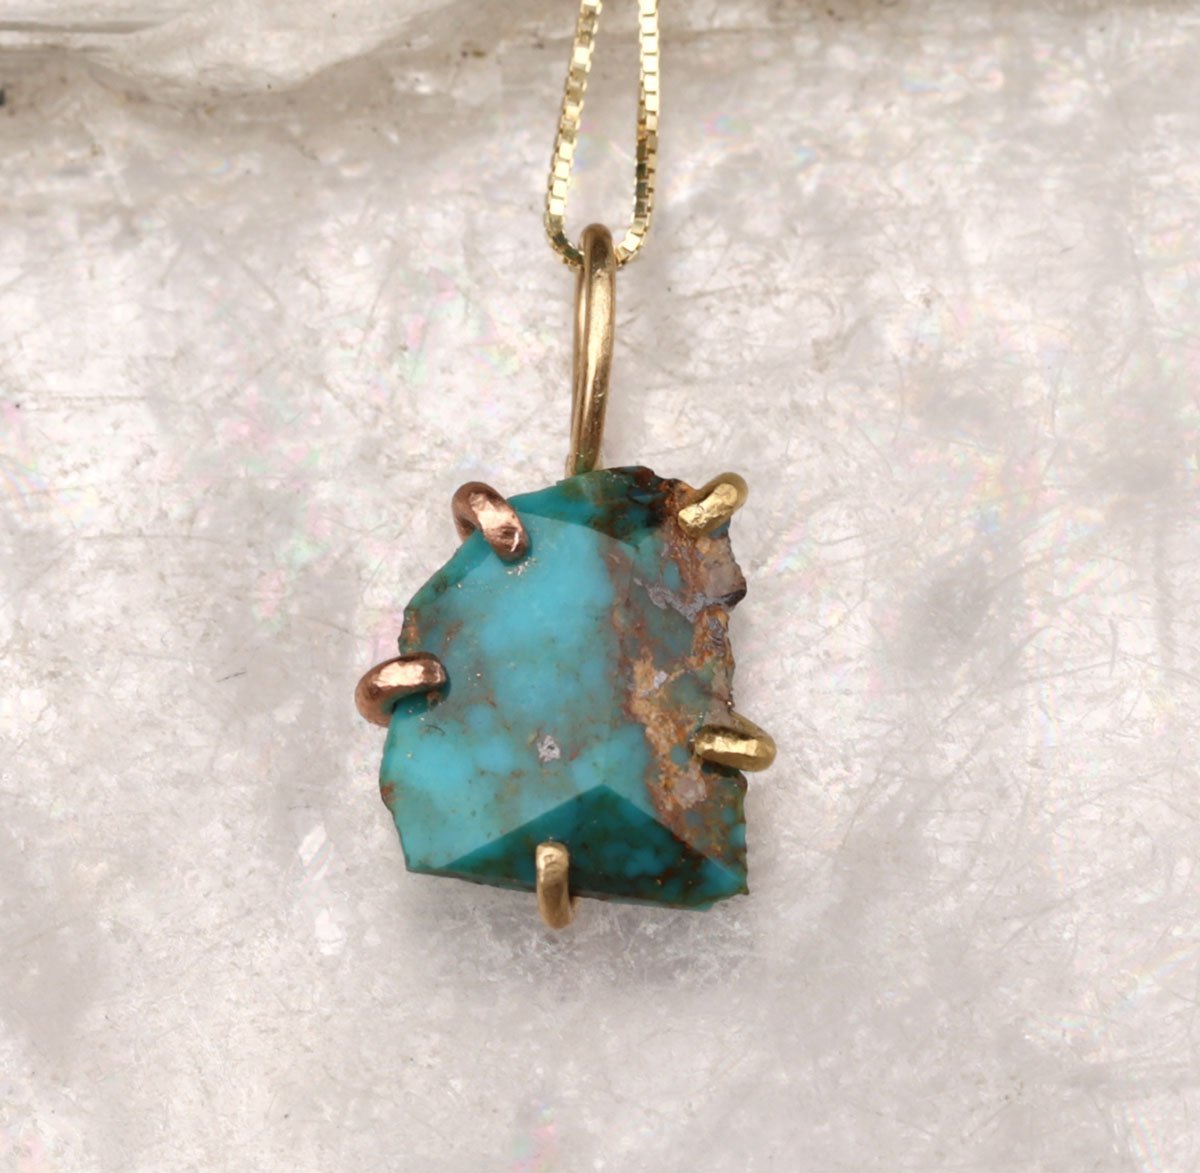 Zambian Turquoise small pendant